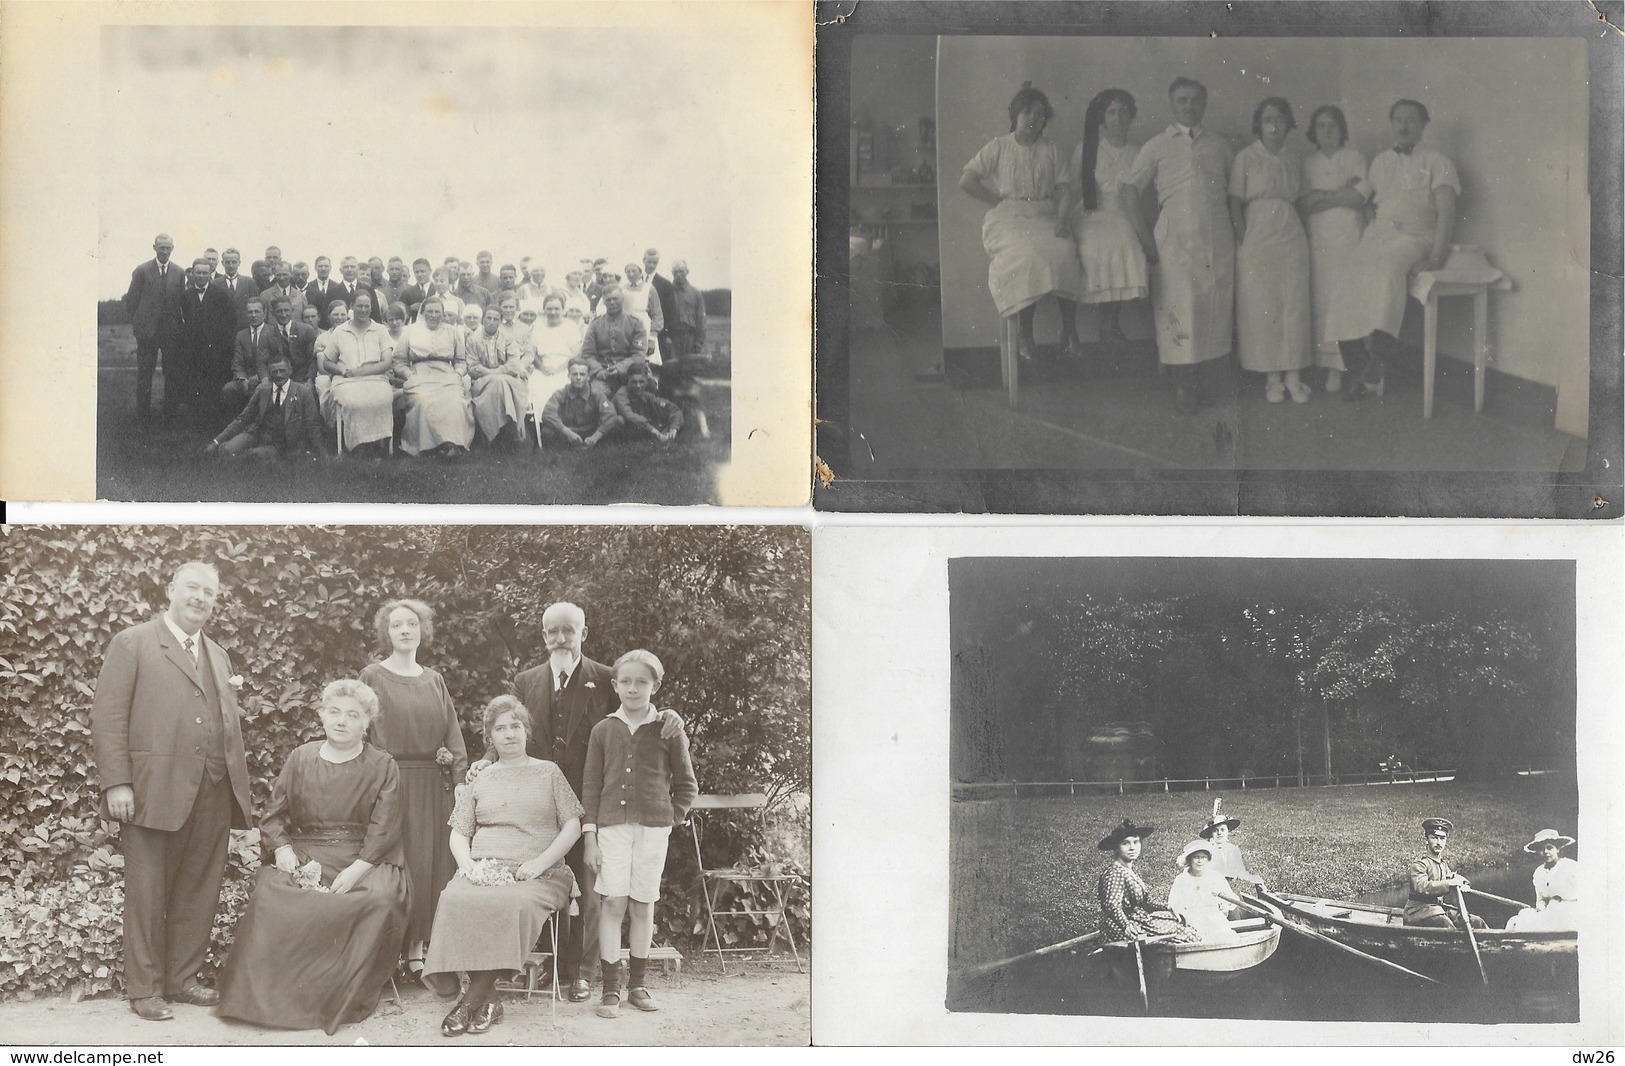 Lot n° 82 de 100 Cartes-photos à identifier: Famille, Militaria, groupes, portraits, communions, lieux...